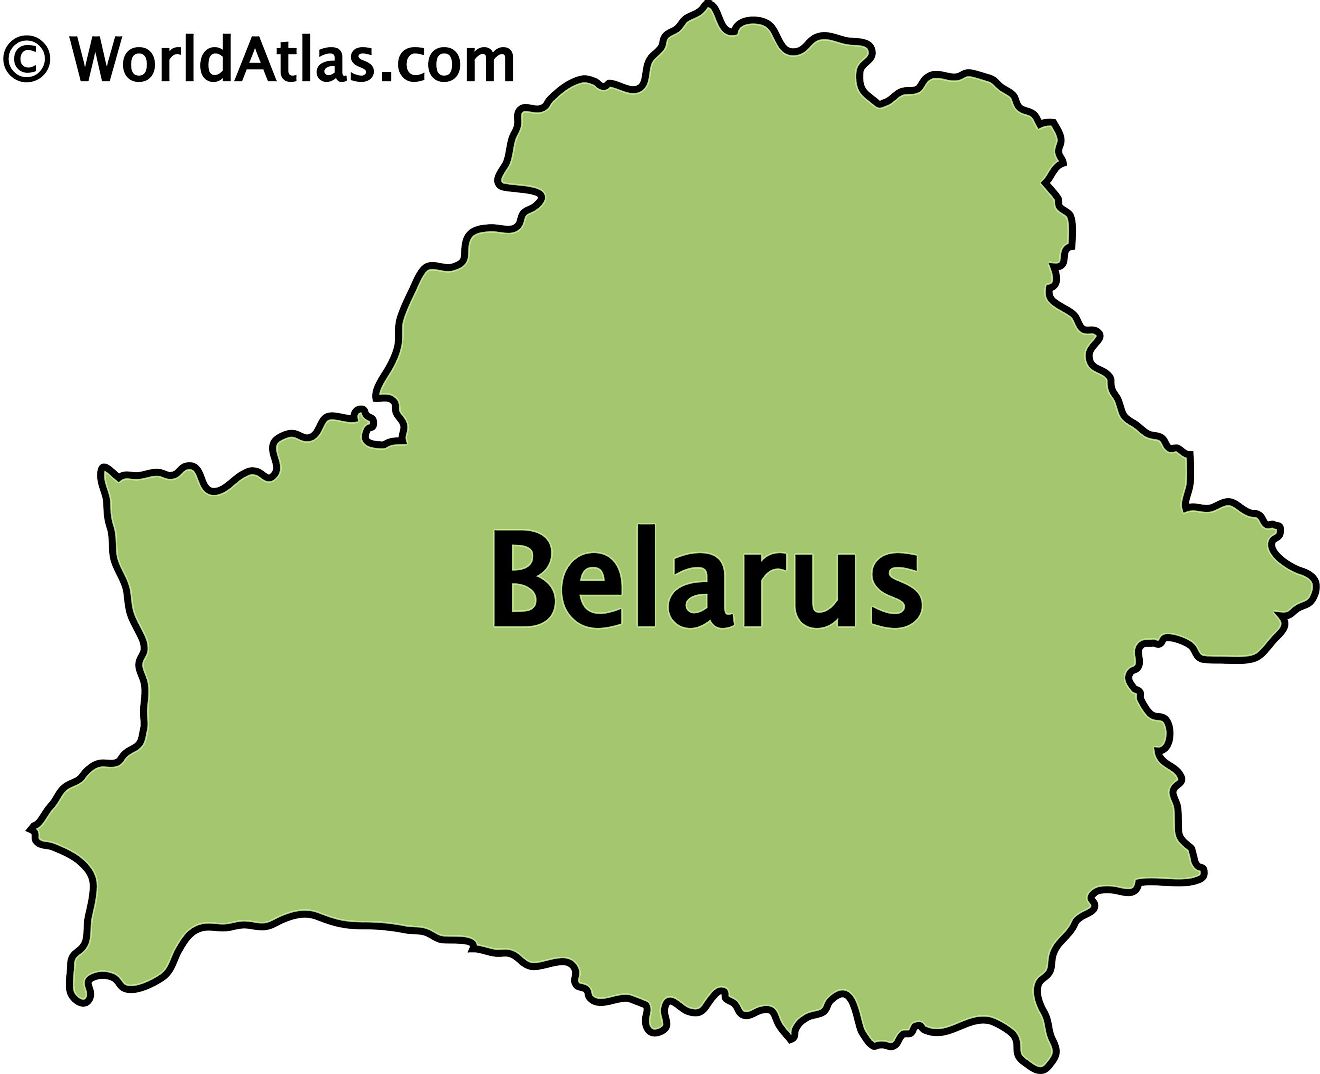 Mapa de contorno de Bielorrusia